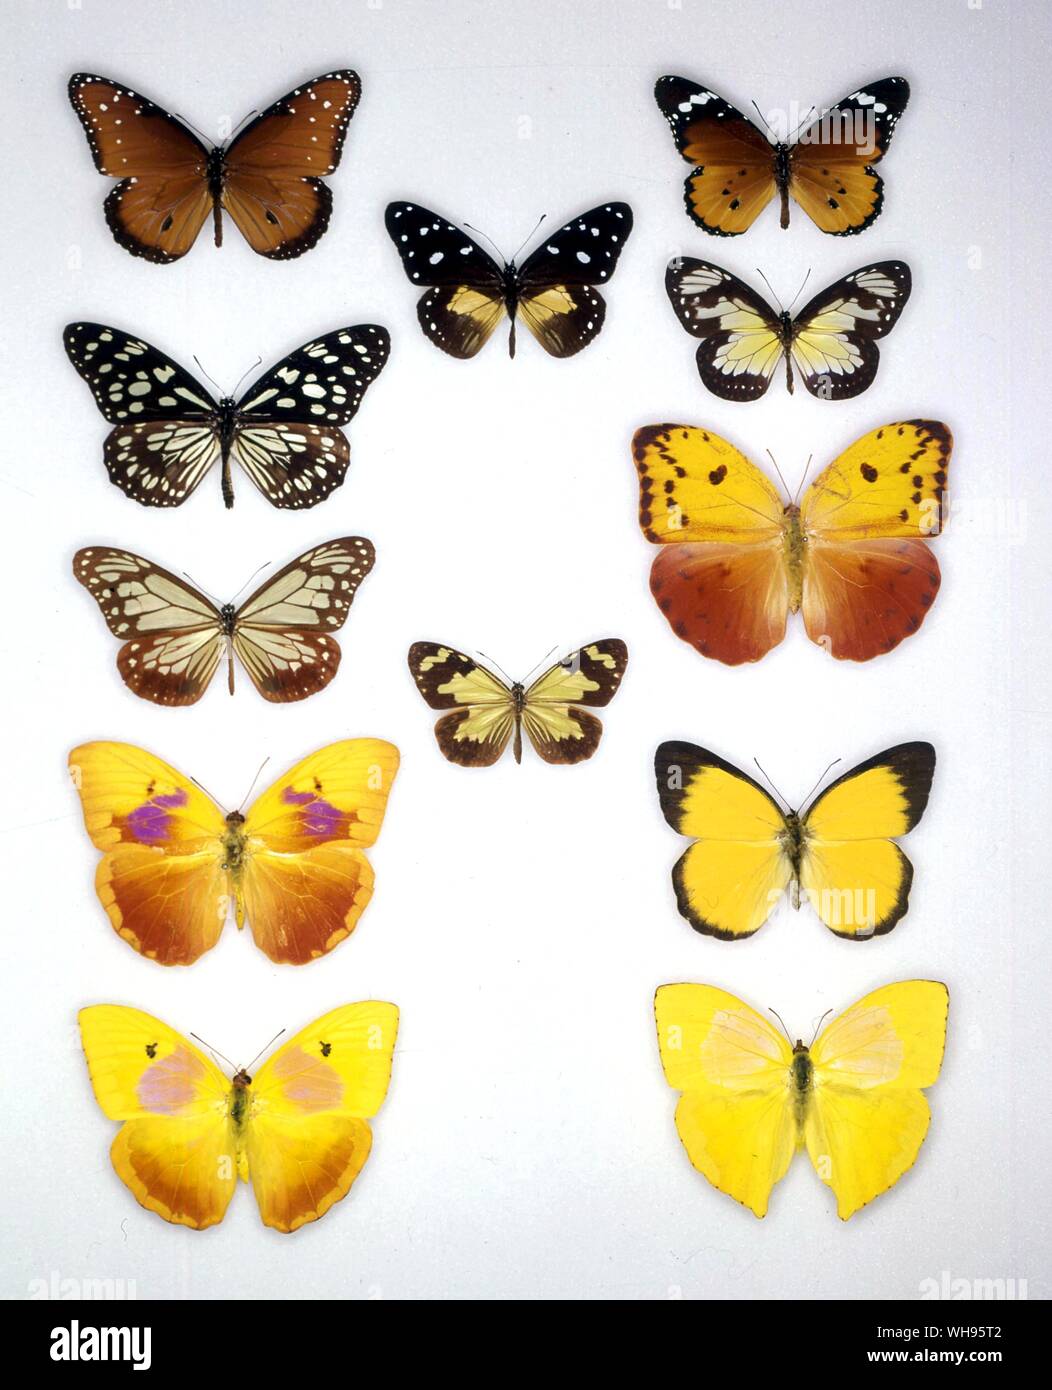 Papillons papillons/- (en haut à gauche en bas) Danaus gilippus, Danaus limniace Danaus, Sita, Phoebus Phoebus, philea avellaneda (femelle) - (rangée du milieu du haut vers le bas) Amauris albimaculata, Danaus pumila - (en haut à droite en bas) Danaus chrysippe, Danaus schenkii, Phoebus avellaneda (mâle), Delias belisama, Phoebus rurina Banque D'Images